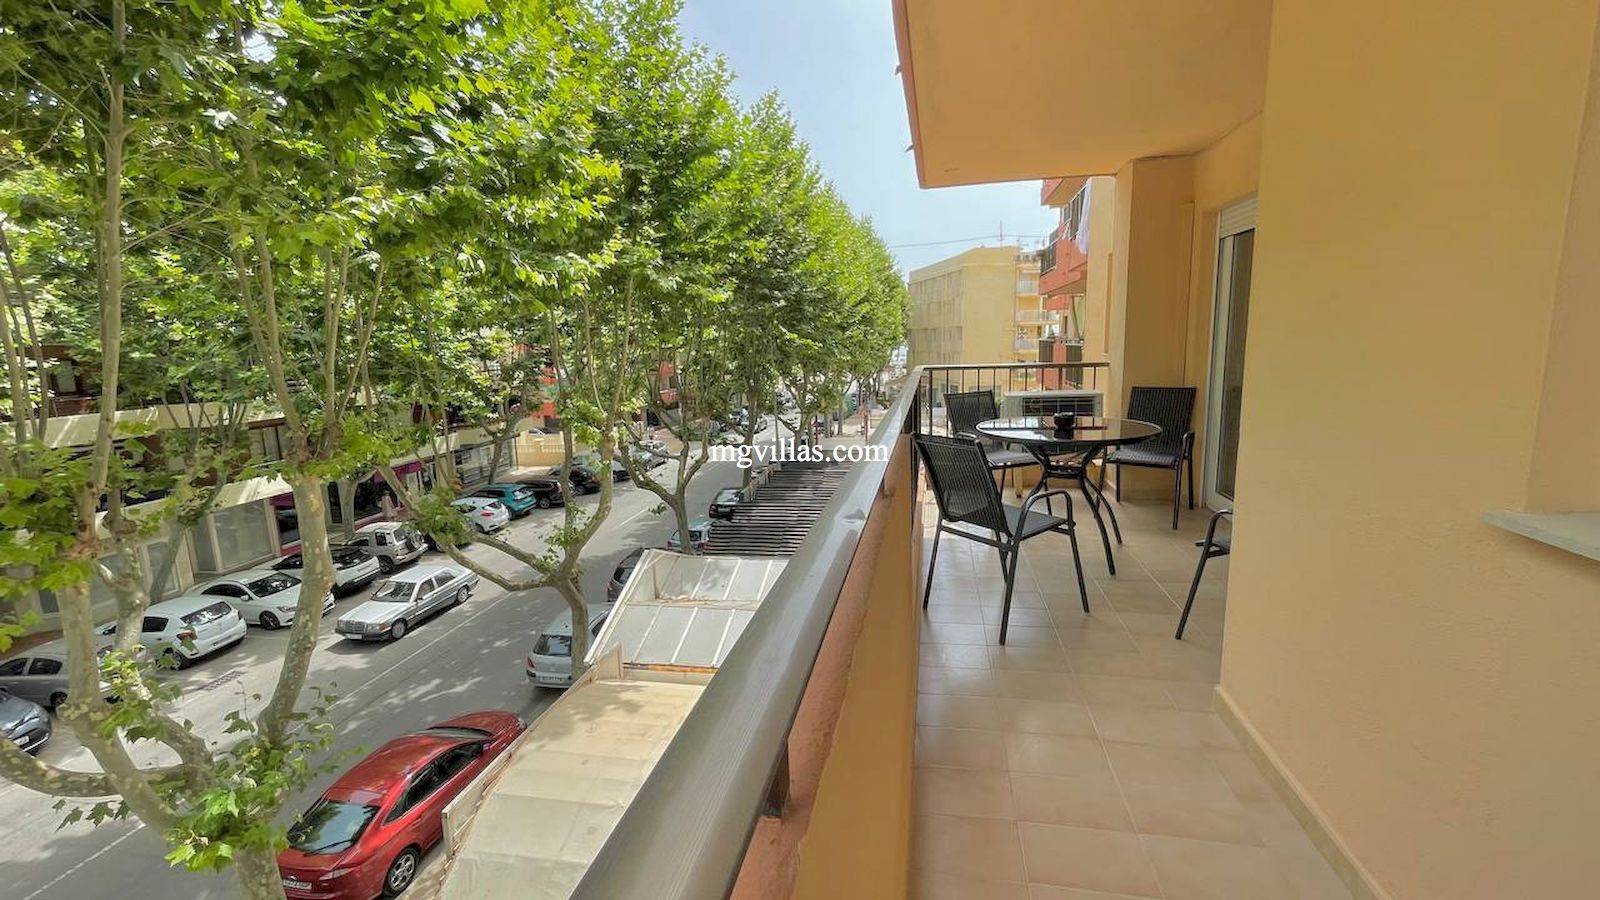 Appartement te huur Tijdelijk- El Arenal- Javea- Alicante